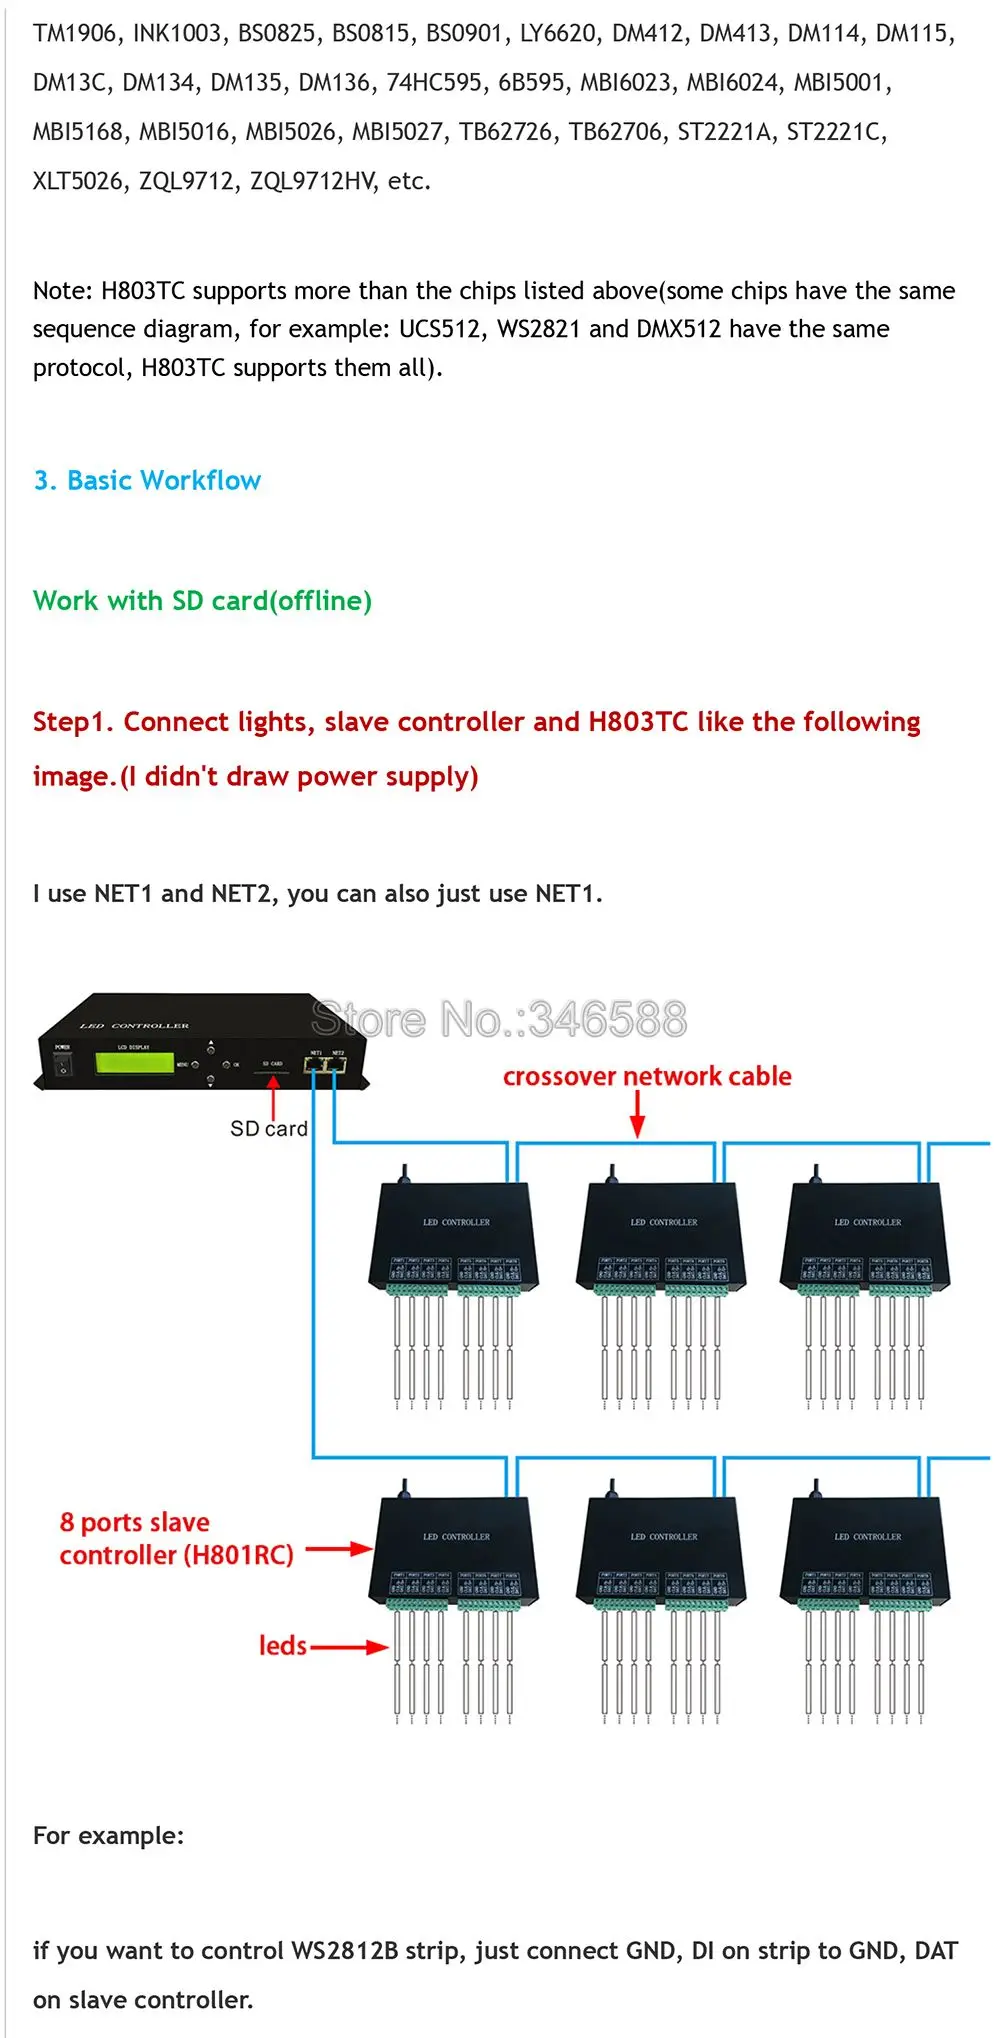 H803TC светодиодный онлайн/Автономный главный контроллер для пиксельных огней привод 170000 пикселей работает с H801RA или H801RC Slave контроллер